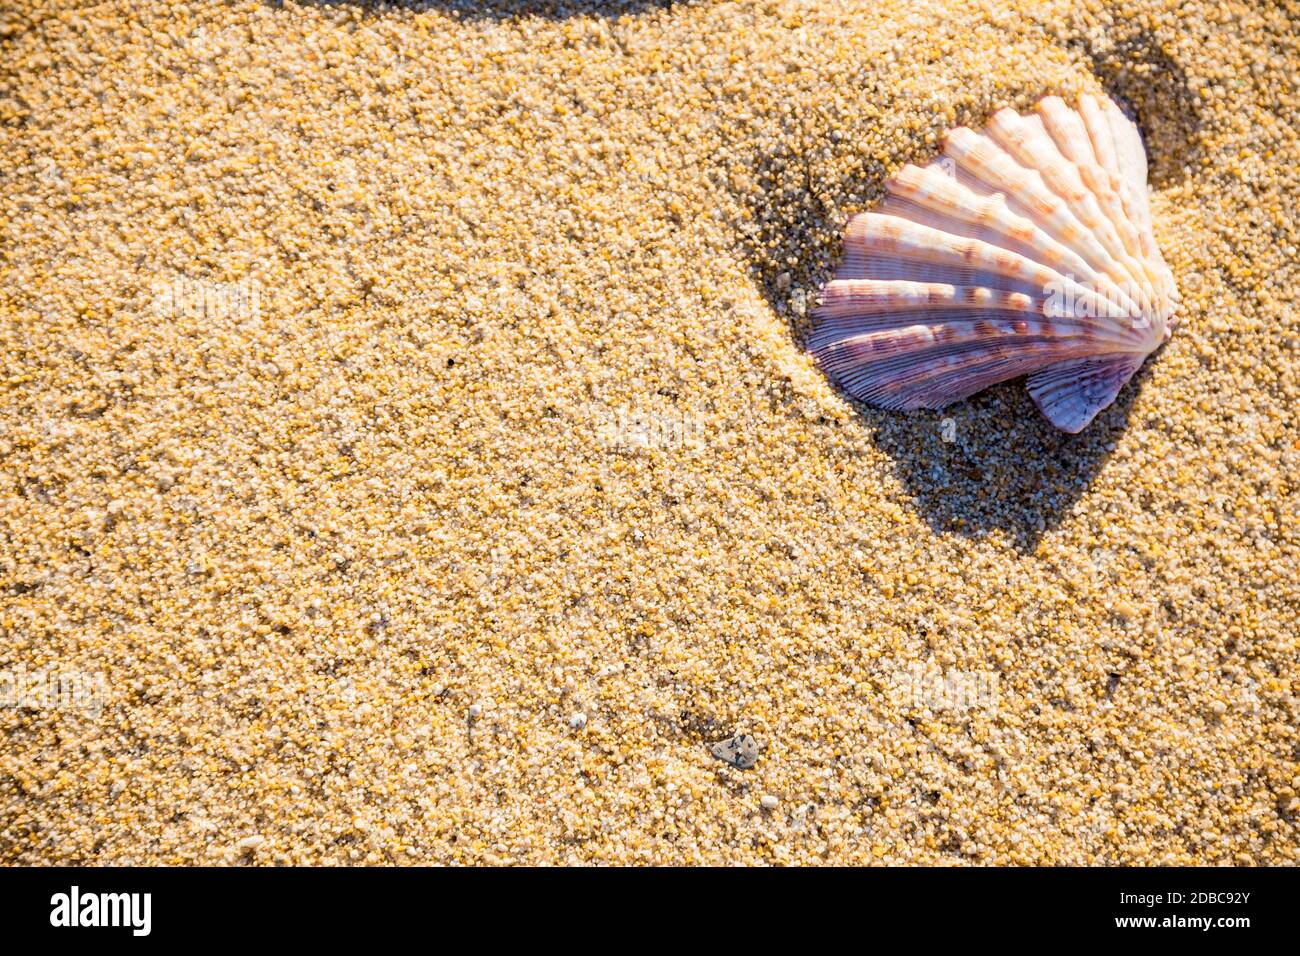 Conchiglia di mare sulla sabbia fotografata dall'alto, calda giornata estiva sulla spiaggia, sfondo tropicale vacanza Foto Stock